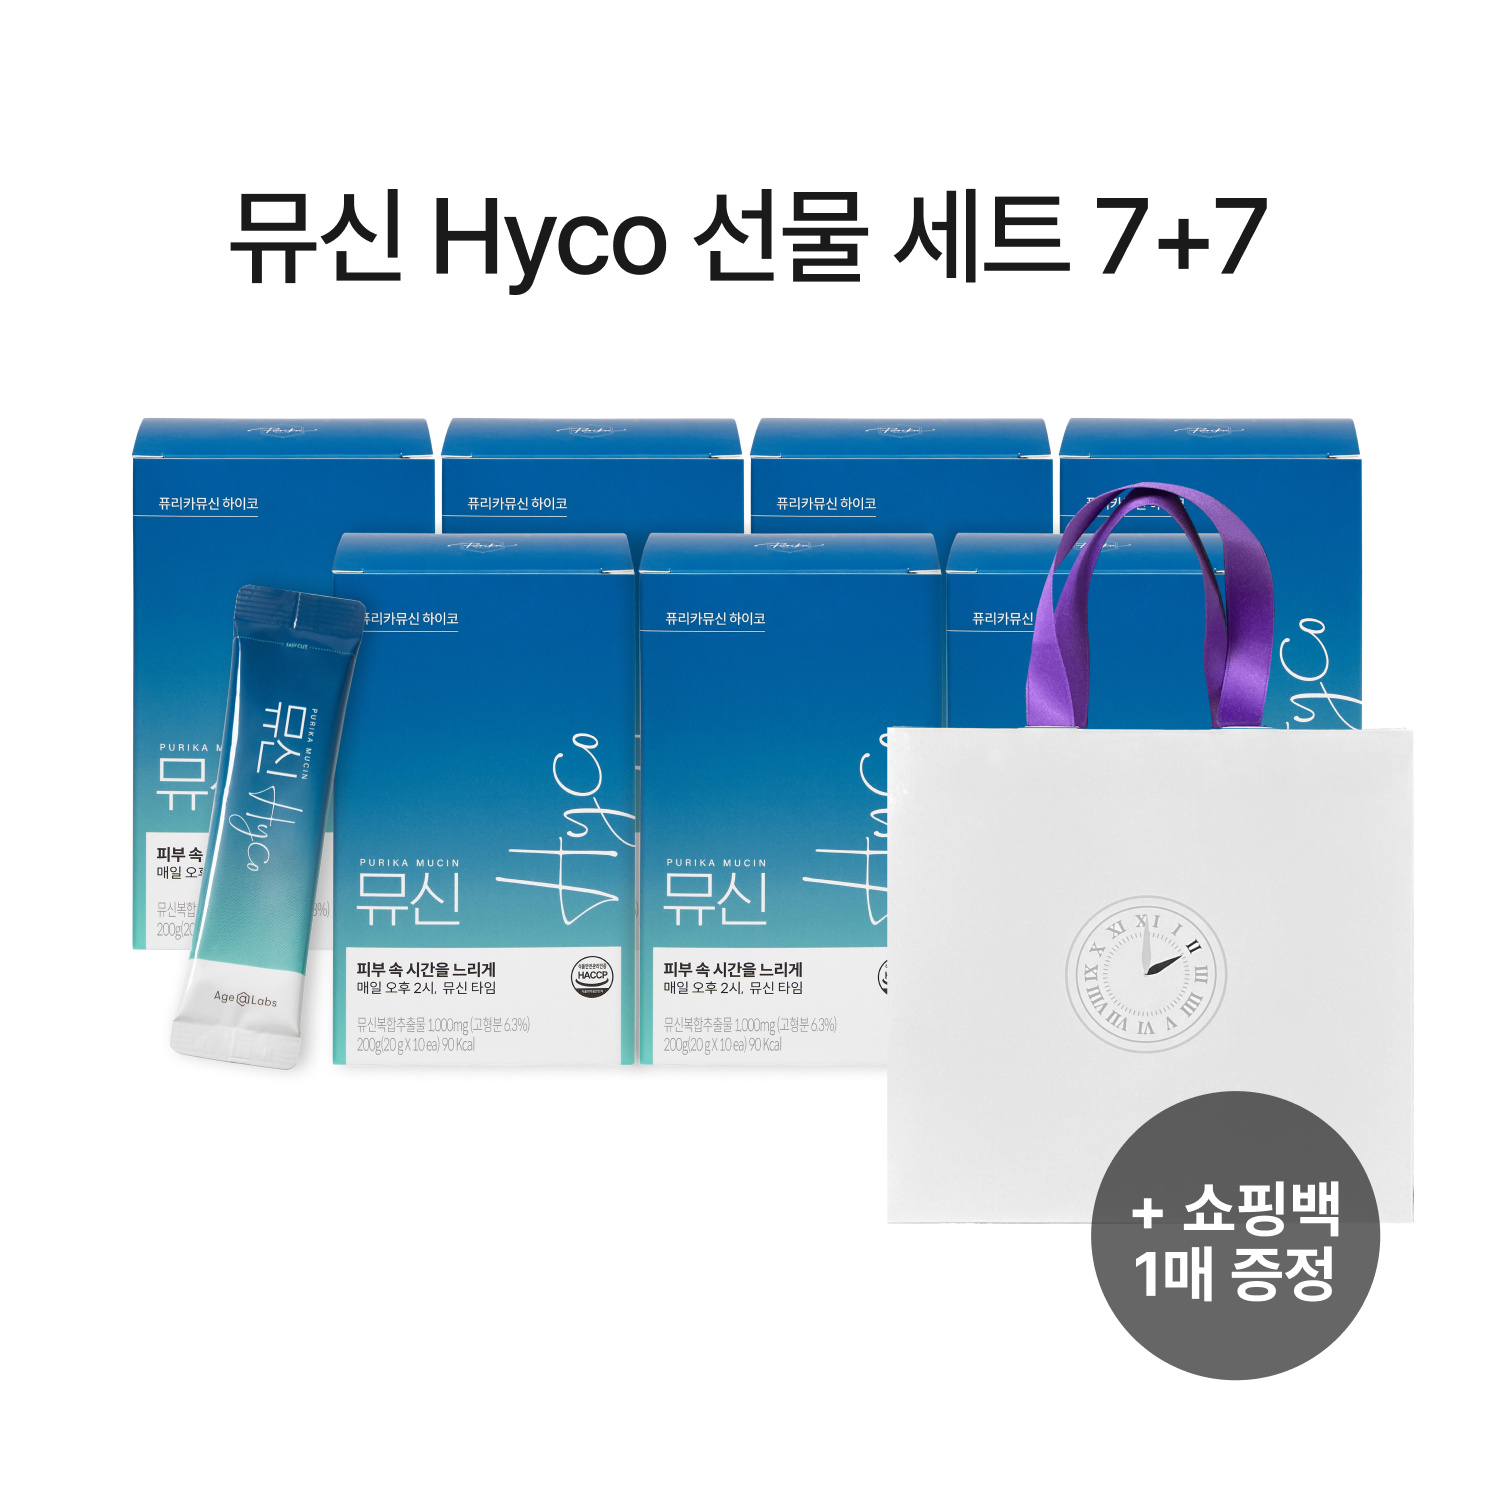 [기간한정] 뮤신 Hyco 7+7 선물세트 (14box,140일) + 쇼핑백 무료증정(1개)